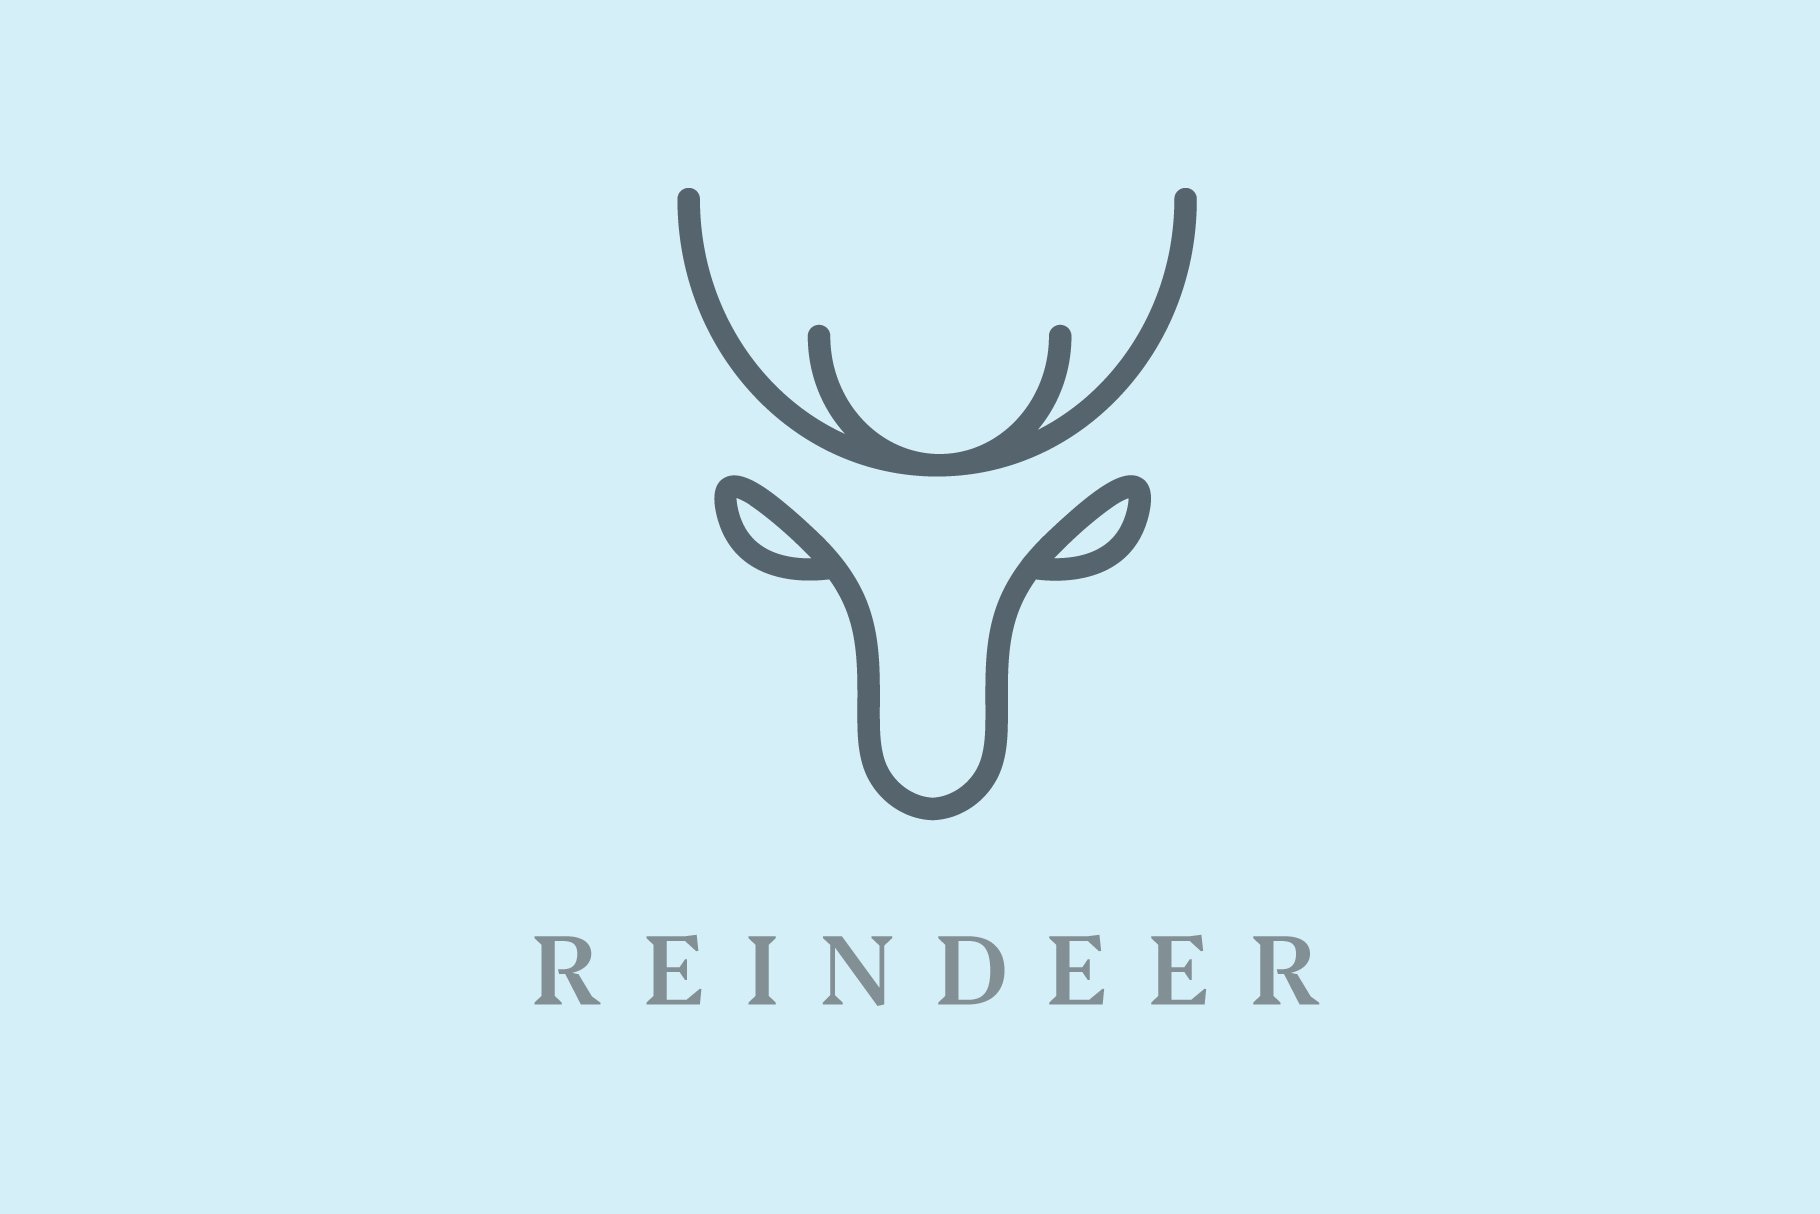 Light blue background with deer logo.